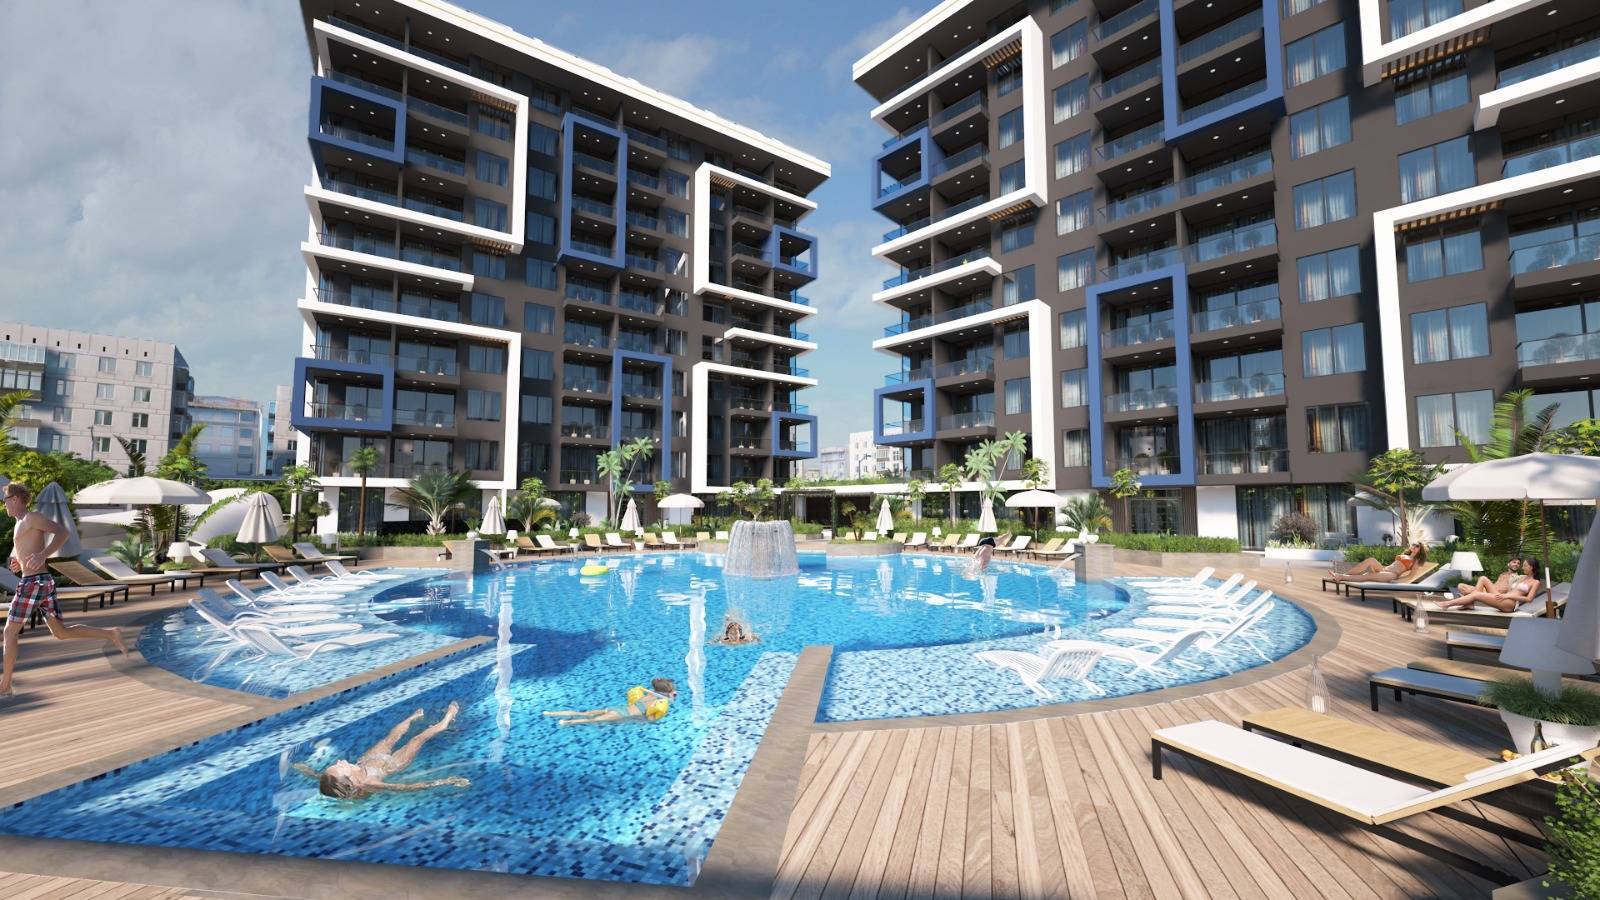 Nové byty na predaj v Turecku - centrum mesta Alanya 